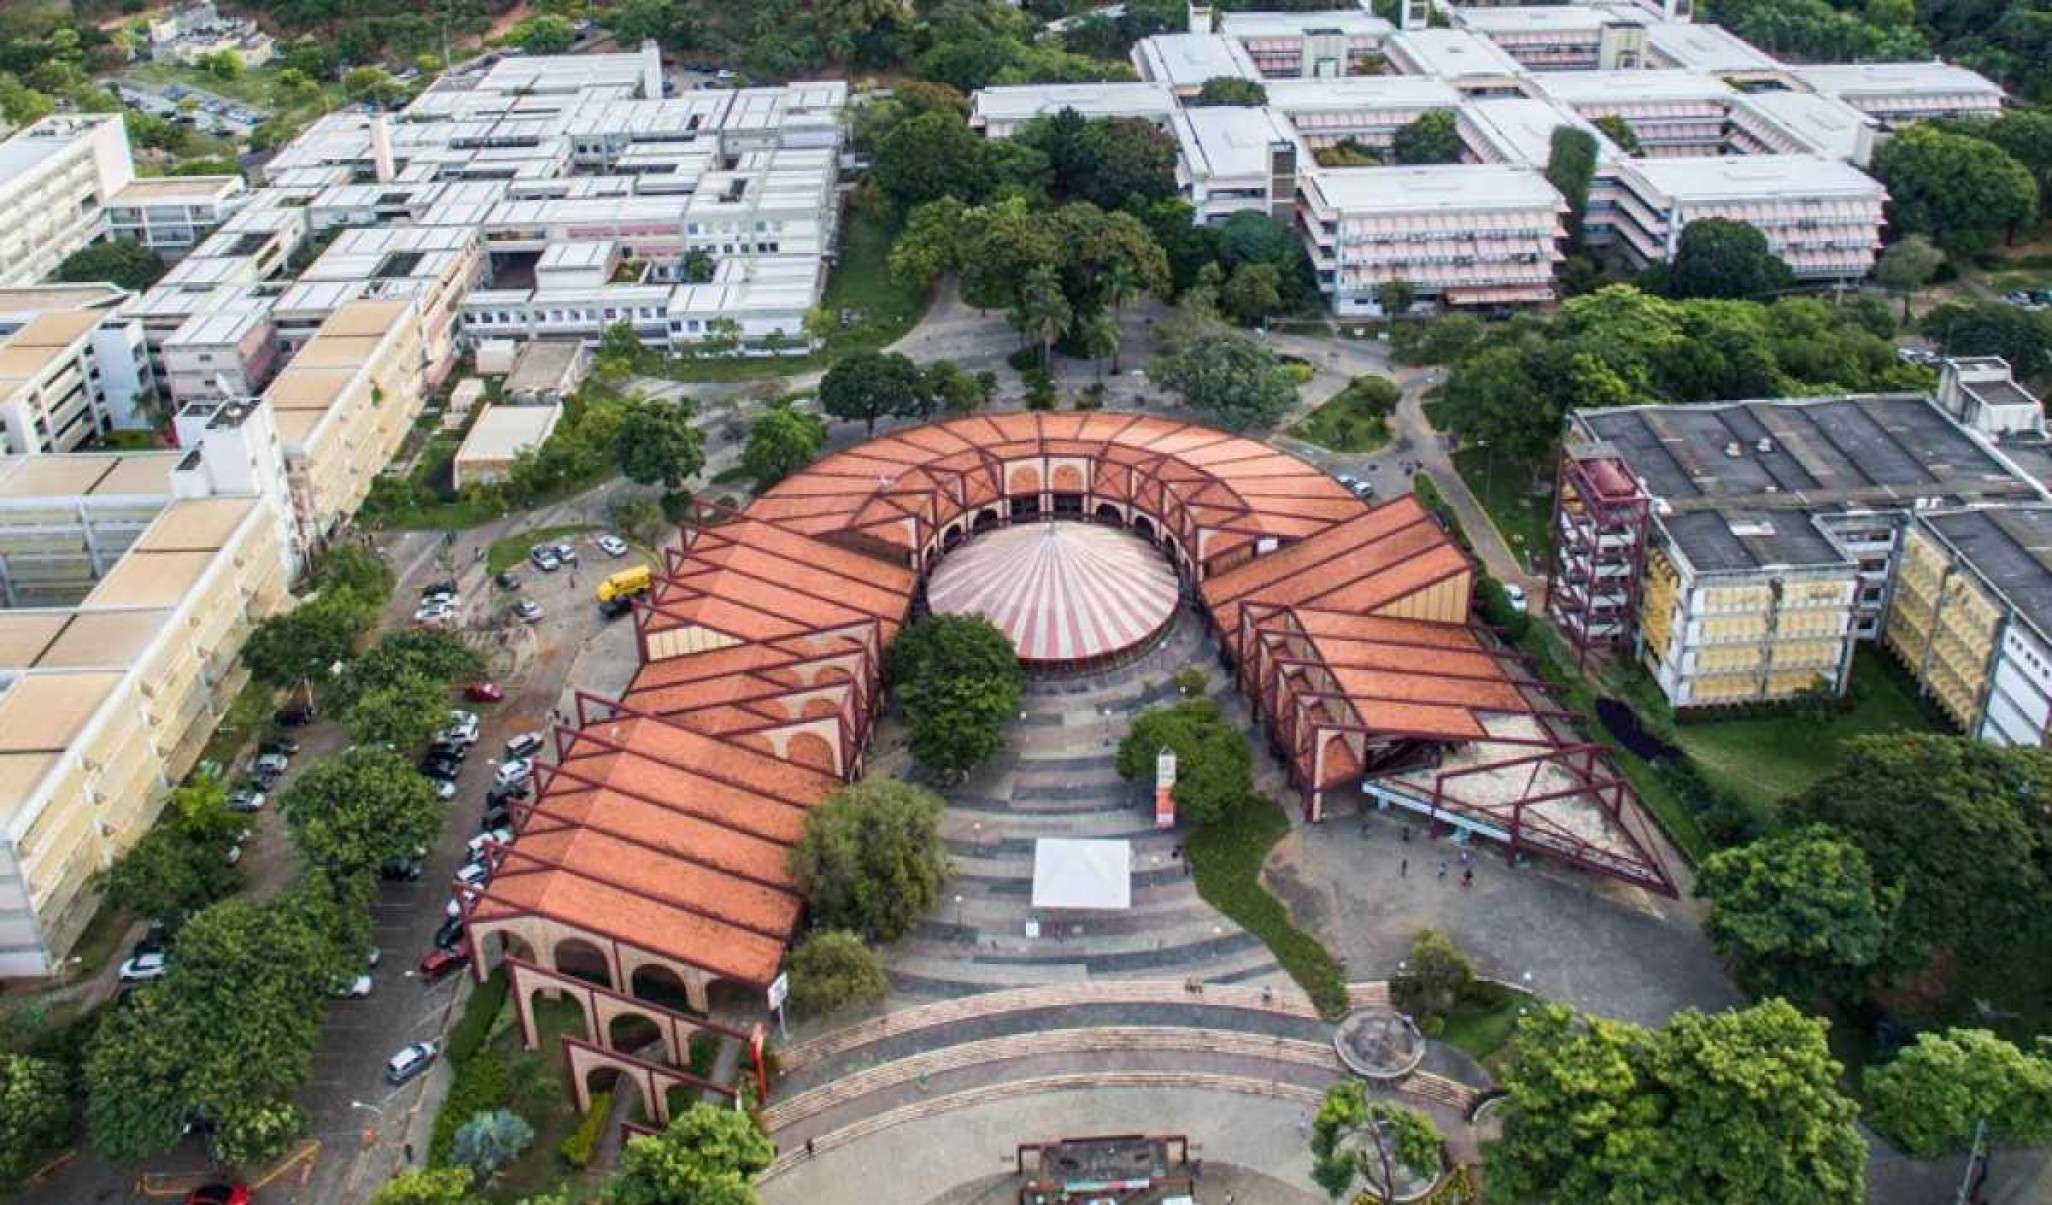 Imagem aérea da Universidade Federal de Minas Gerais contendo prédios e a praça central.